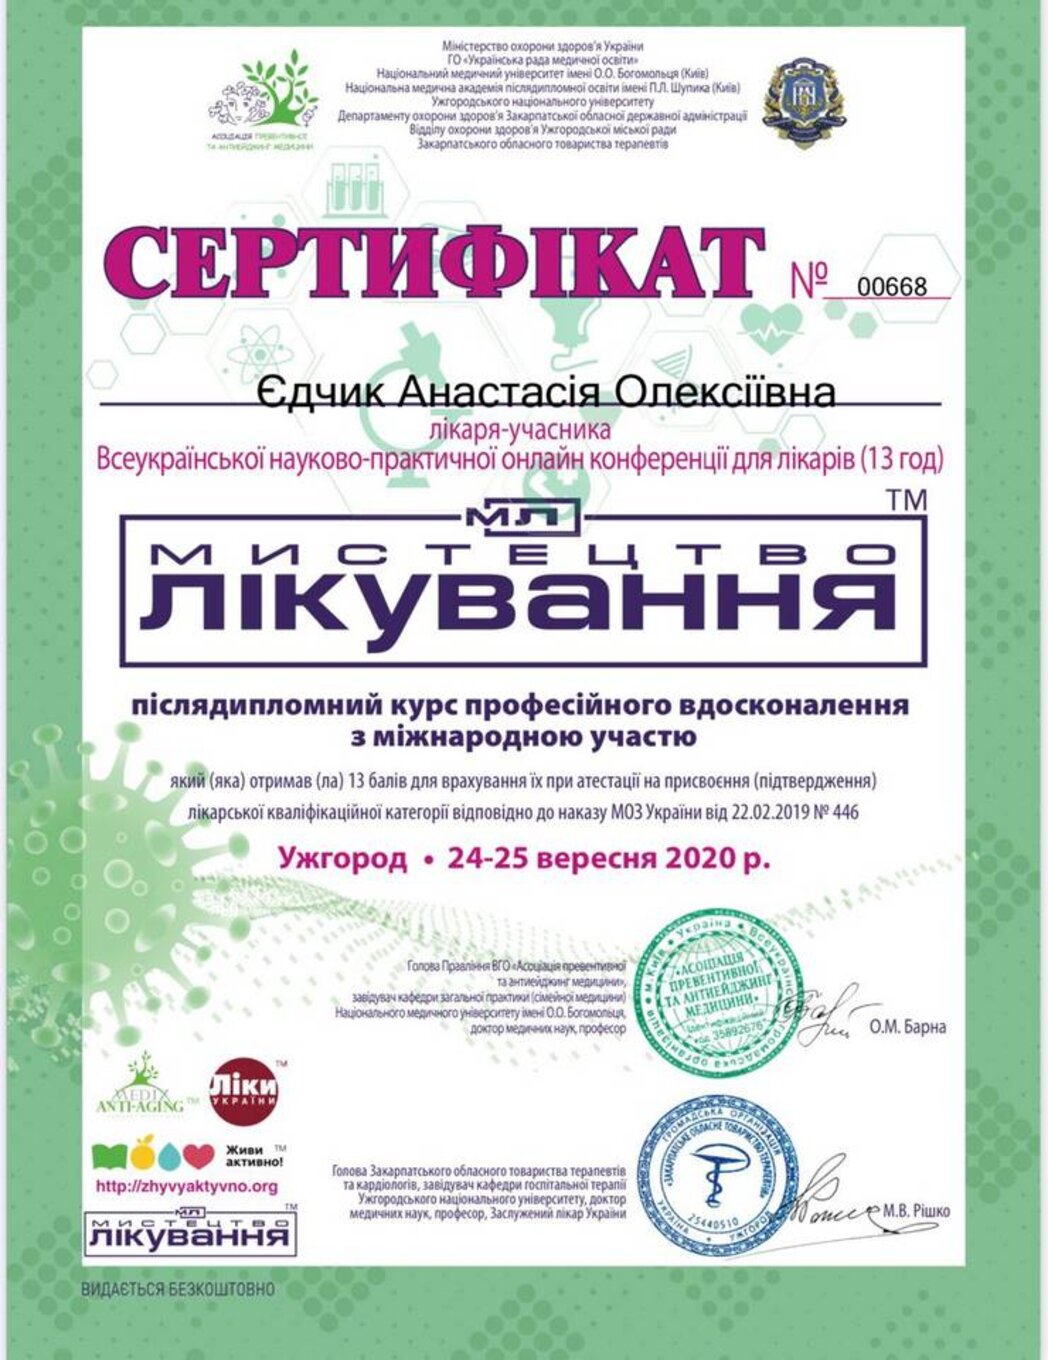 certificates/yedchik-anastasiya-oleksiyivna/erc-edchik-cert-43.jpg